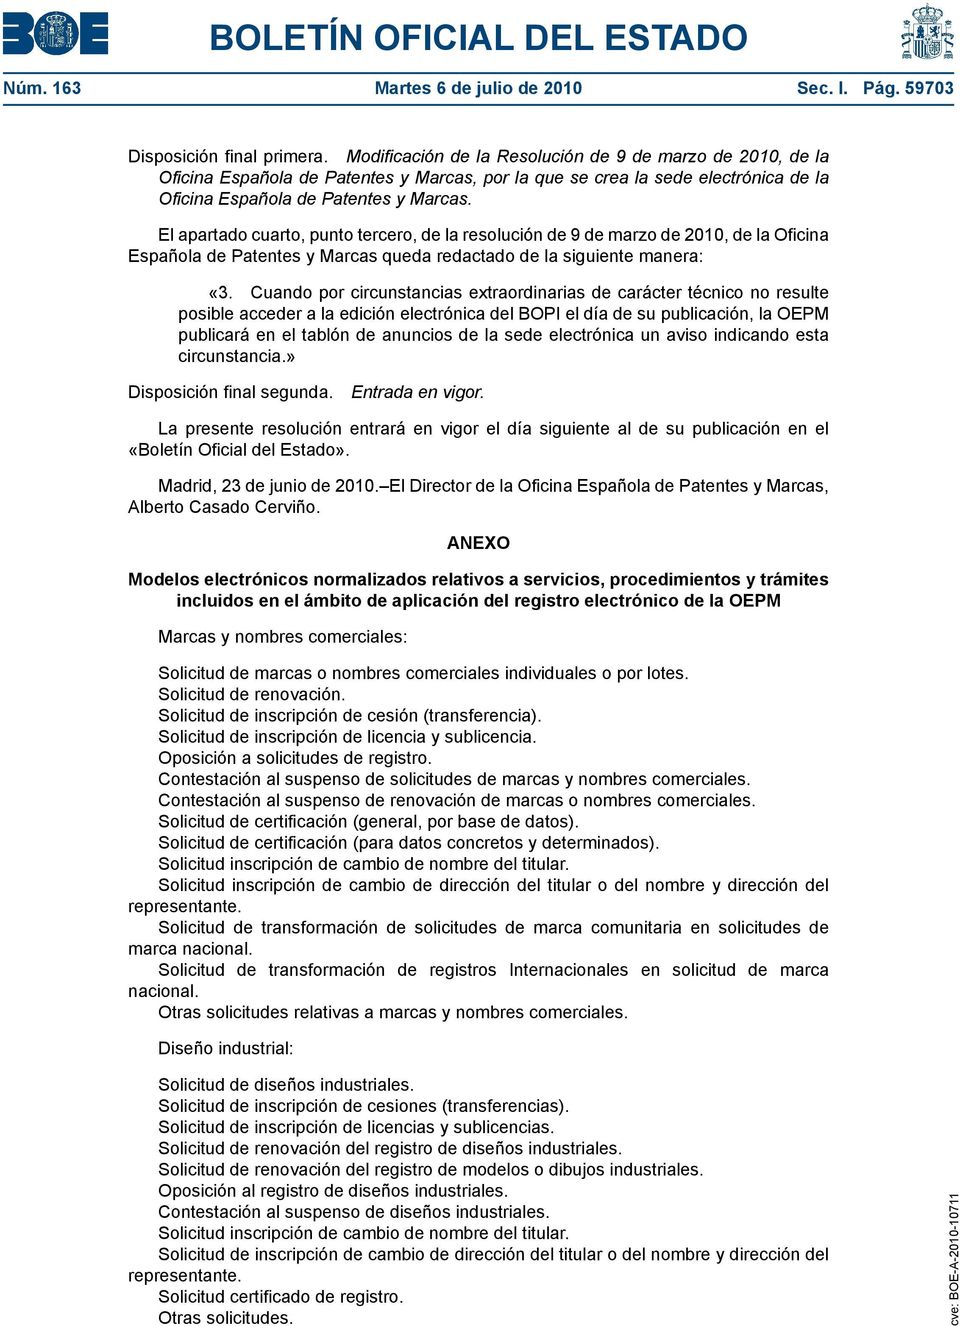 El apartado cuarto, punto tercero, de la resolución de 9 de marzo de 2010, de la Oficina Española de Patentes y Marcas queda redactado de la siguiente manera: «3.